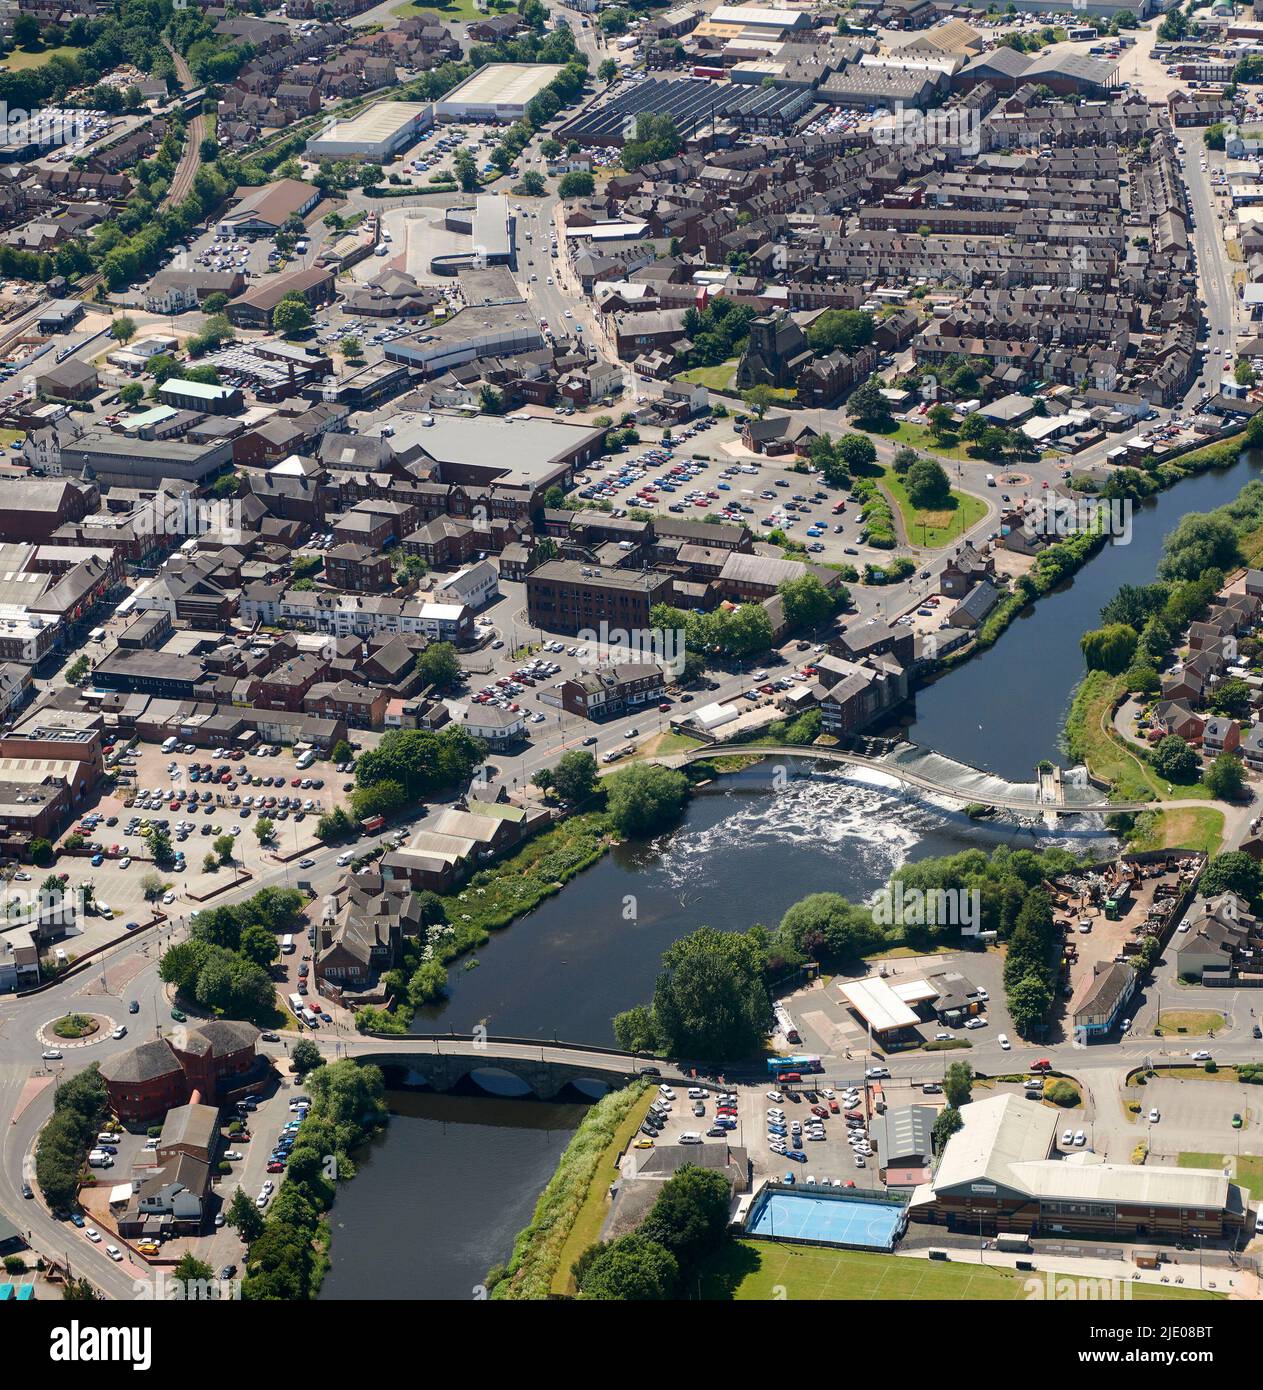 Eine Luftaufnahme von castleford, West Yorkshire, Nordengland, Großbritannien, zeigt den Fluss Aire und neue Wohnsiedlungen Stockfoto